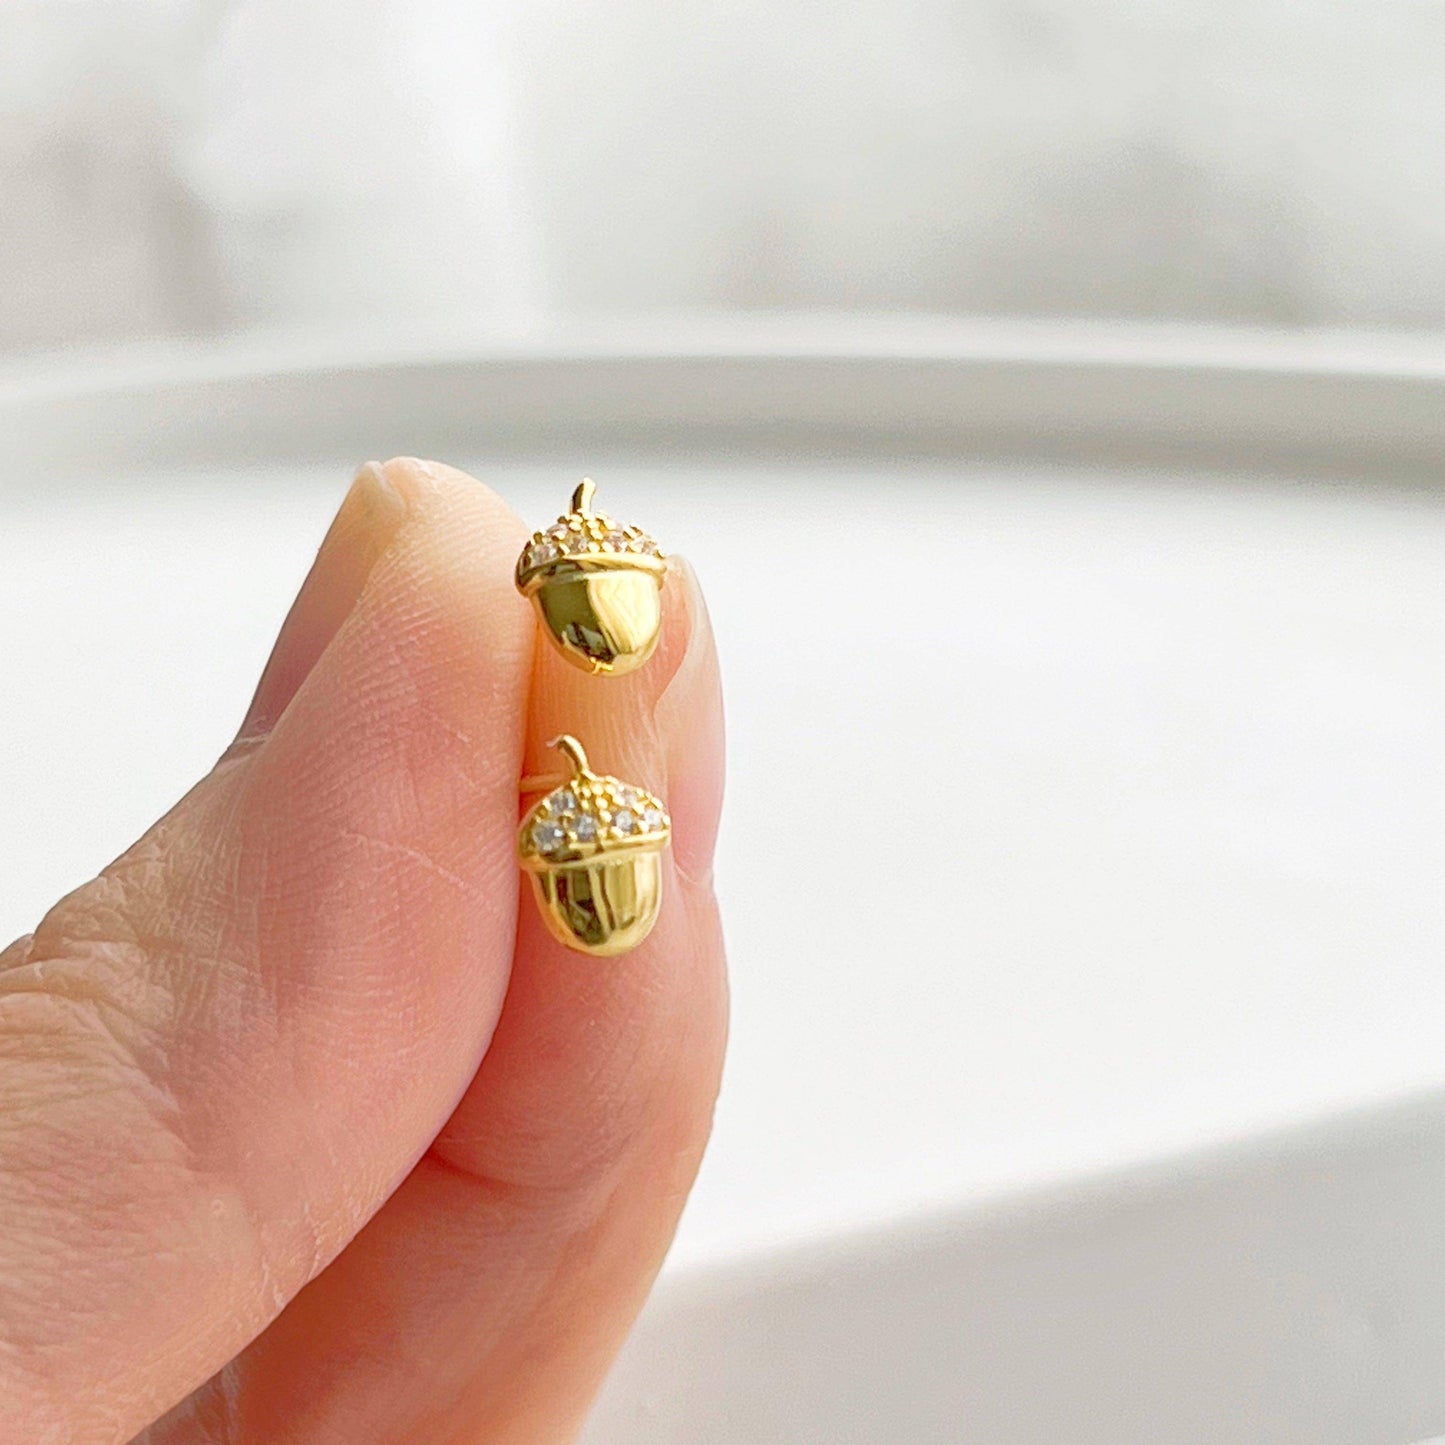 Mini Golden Nuts Earrings - Tiny Size Sterling Silver Stud Earrings-Ninaouity